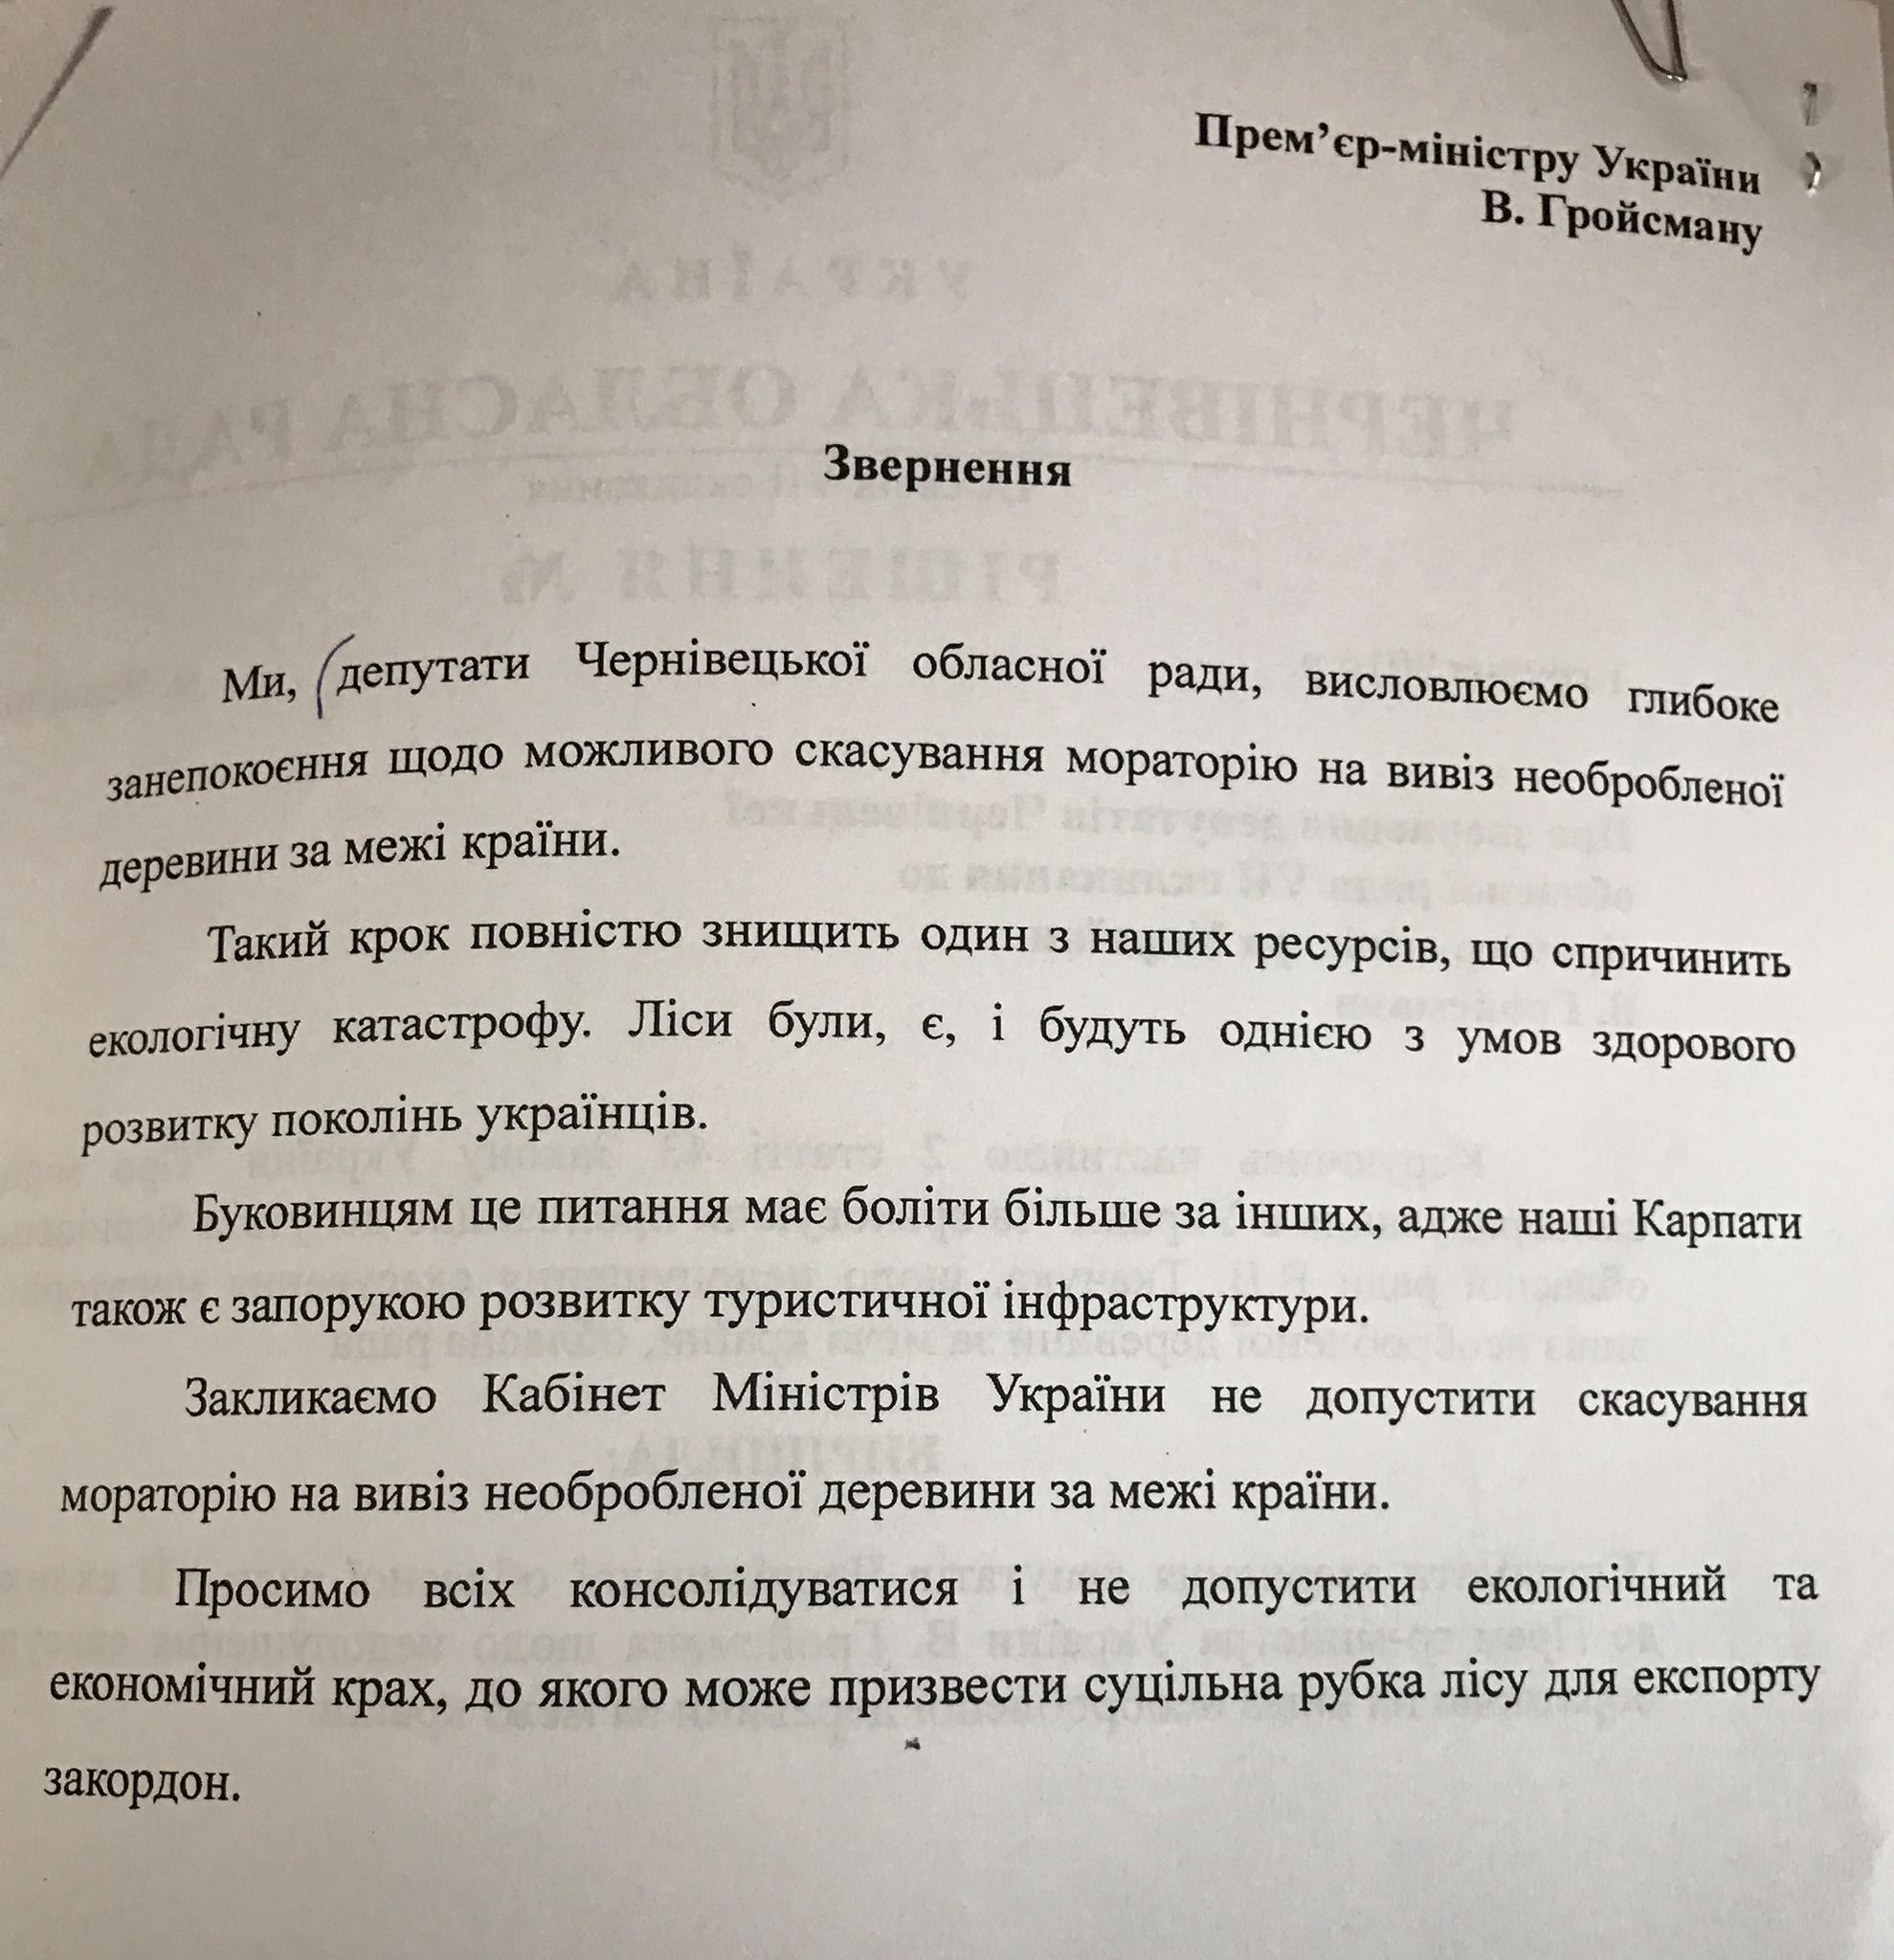 Чернівецька обласна рада підтримала ініціативу УКРОПу про недопущення скасування мораторію на вивіз необробленої деревини